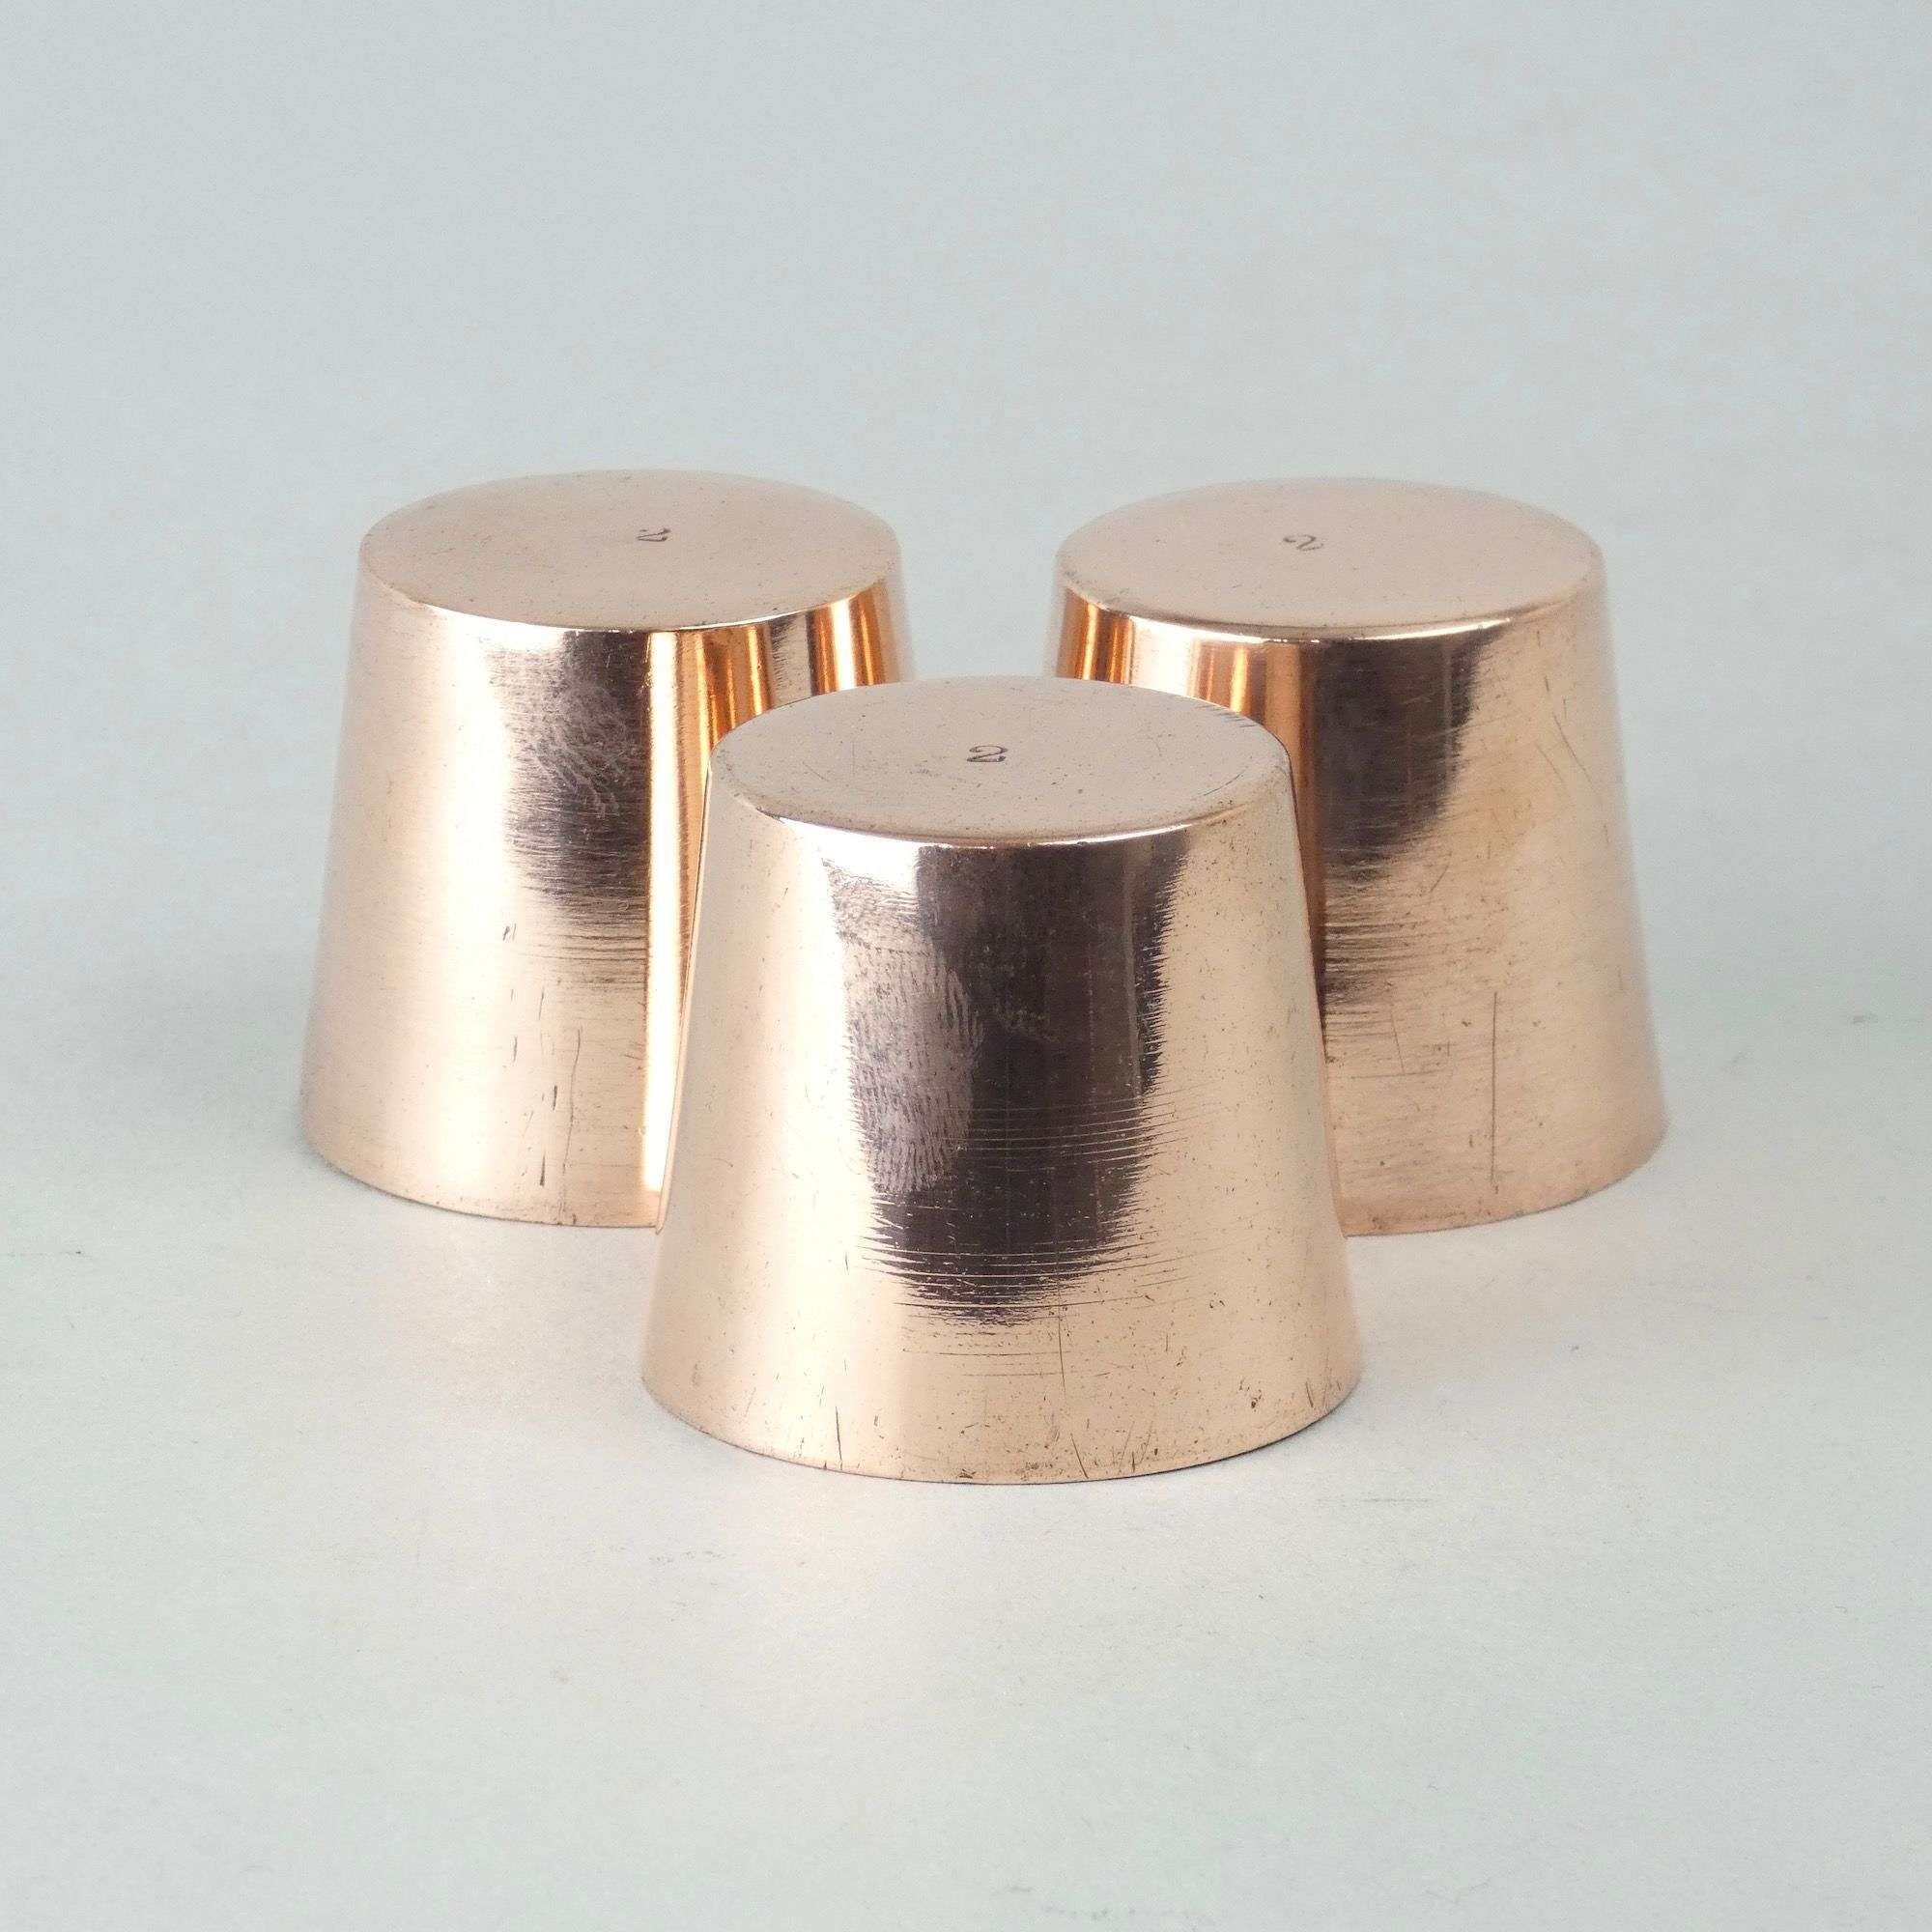 Miniature copper dariole moulds